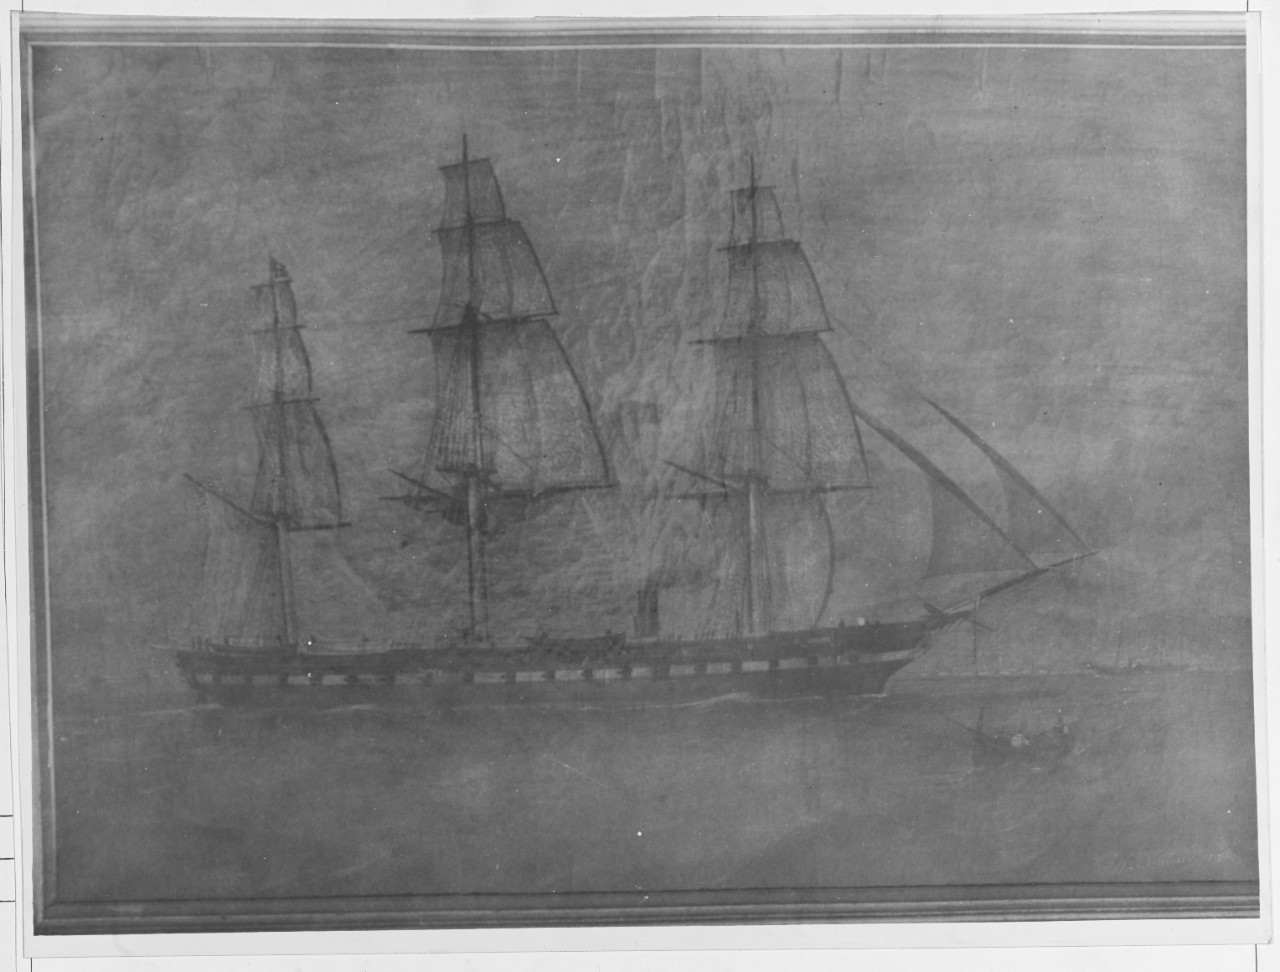 U.S. steam frigate COLORADO